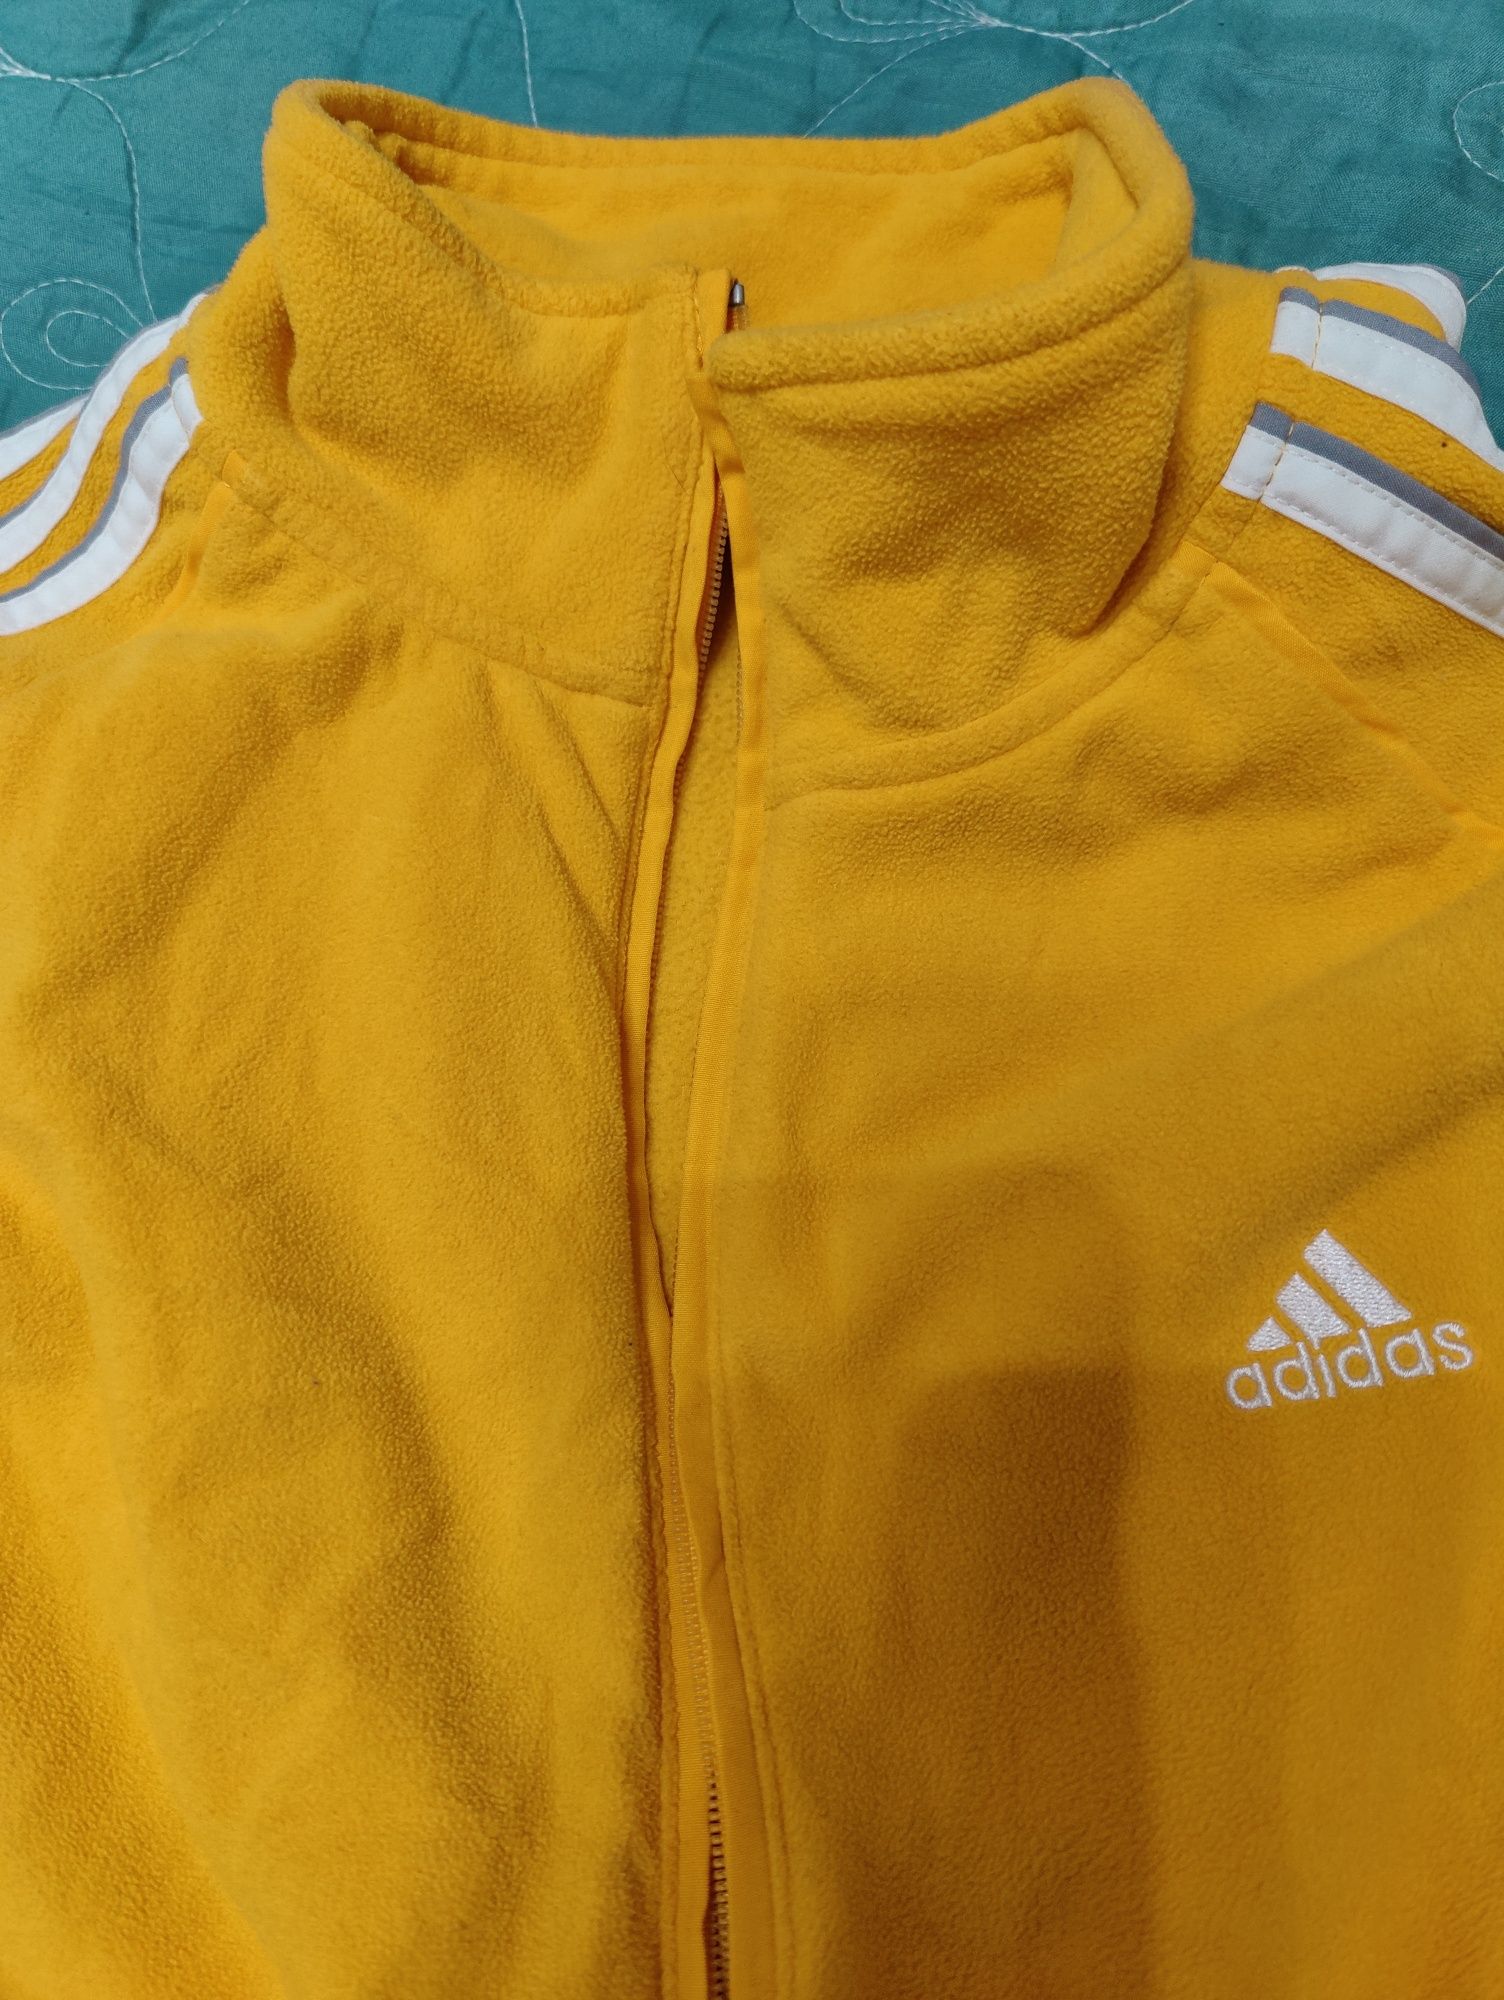 Adidas original олимпийка, флисовая, теплая